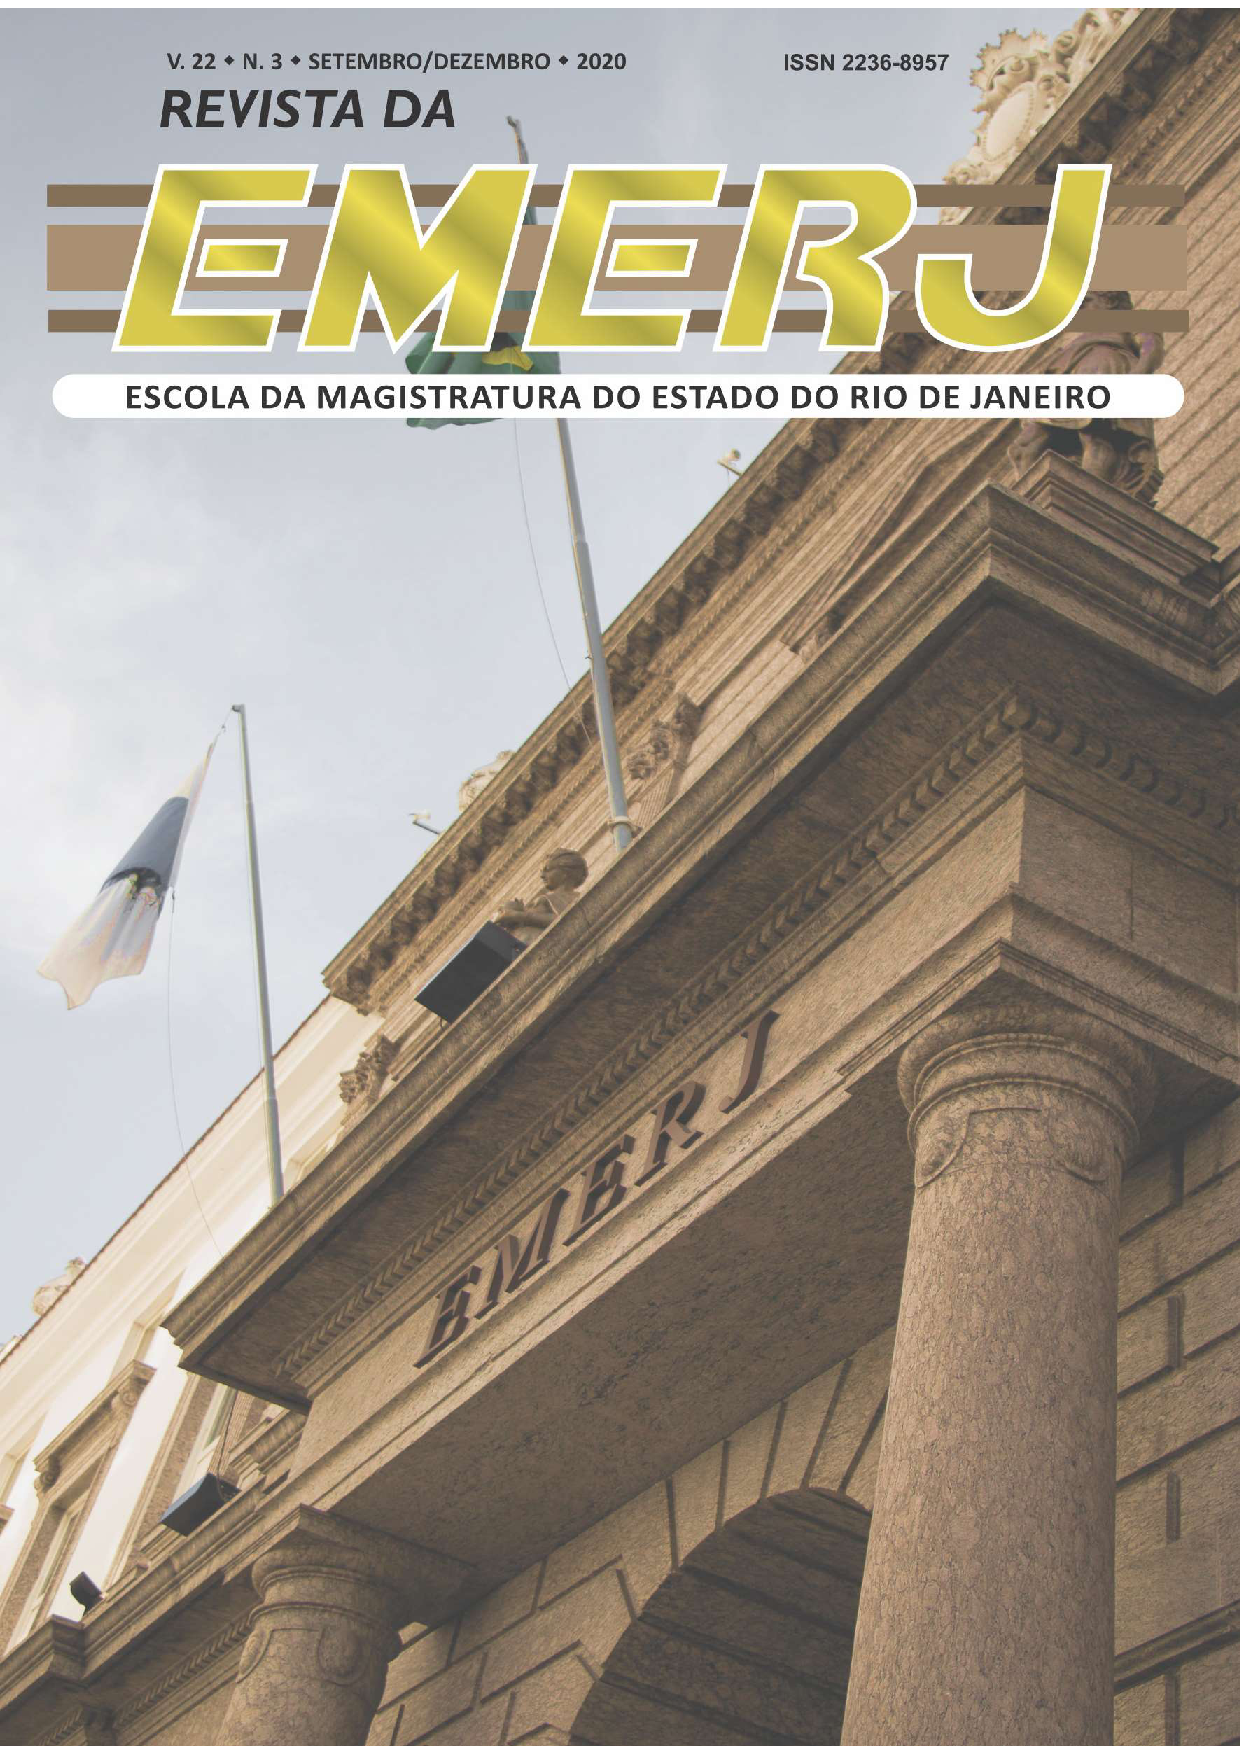 					View Vol. 22 No. 3 (2020): Revista da EMERJ
				